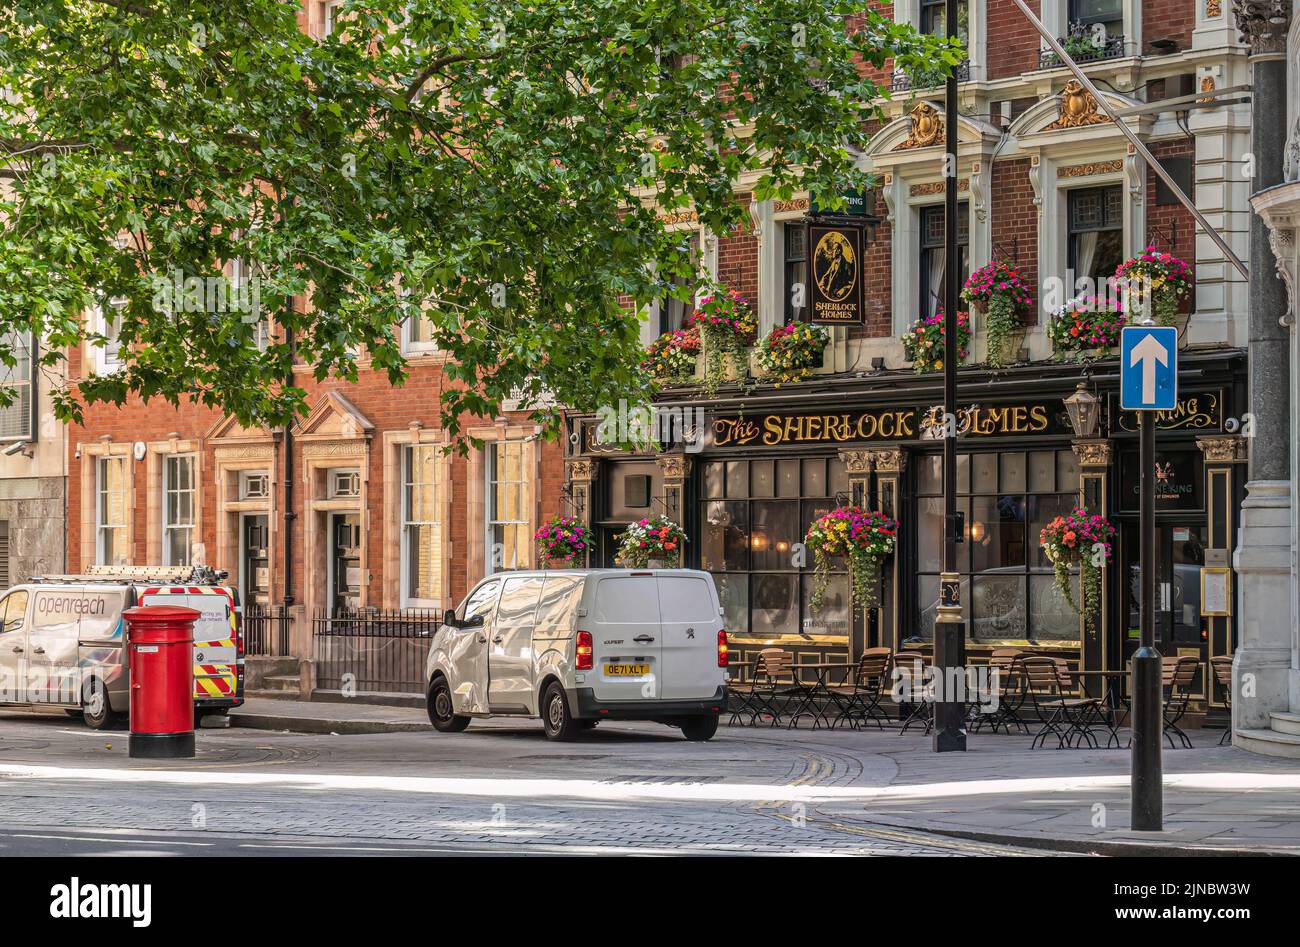 Londres, Reino Unido- 4 de julio de 2022: Sherlock Holmes Pub en Northumberland Street bajo follaje verde y coches estacionados en frente. Foto de stock